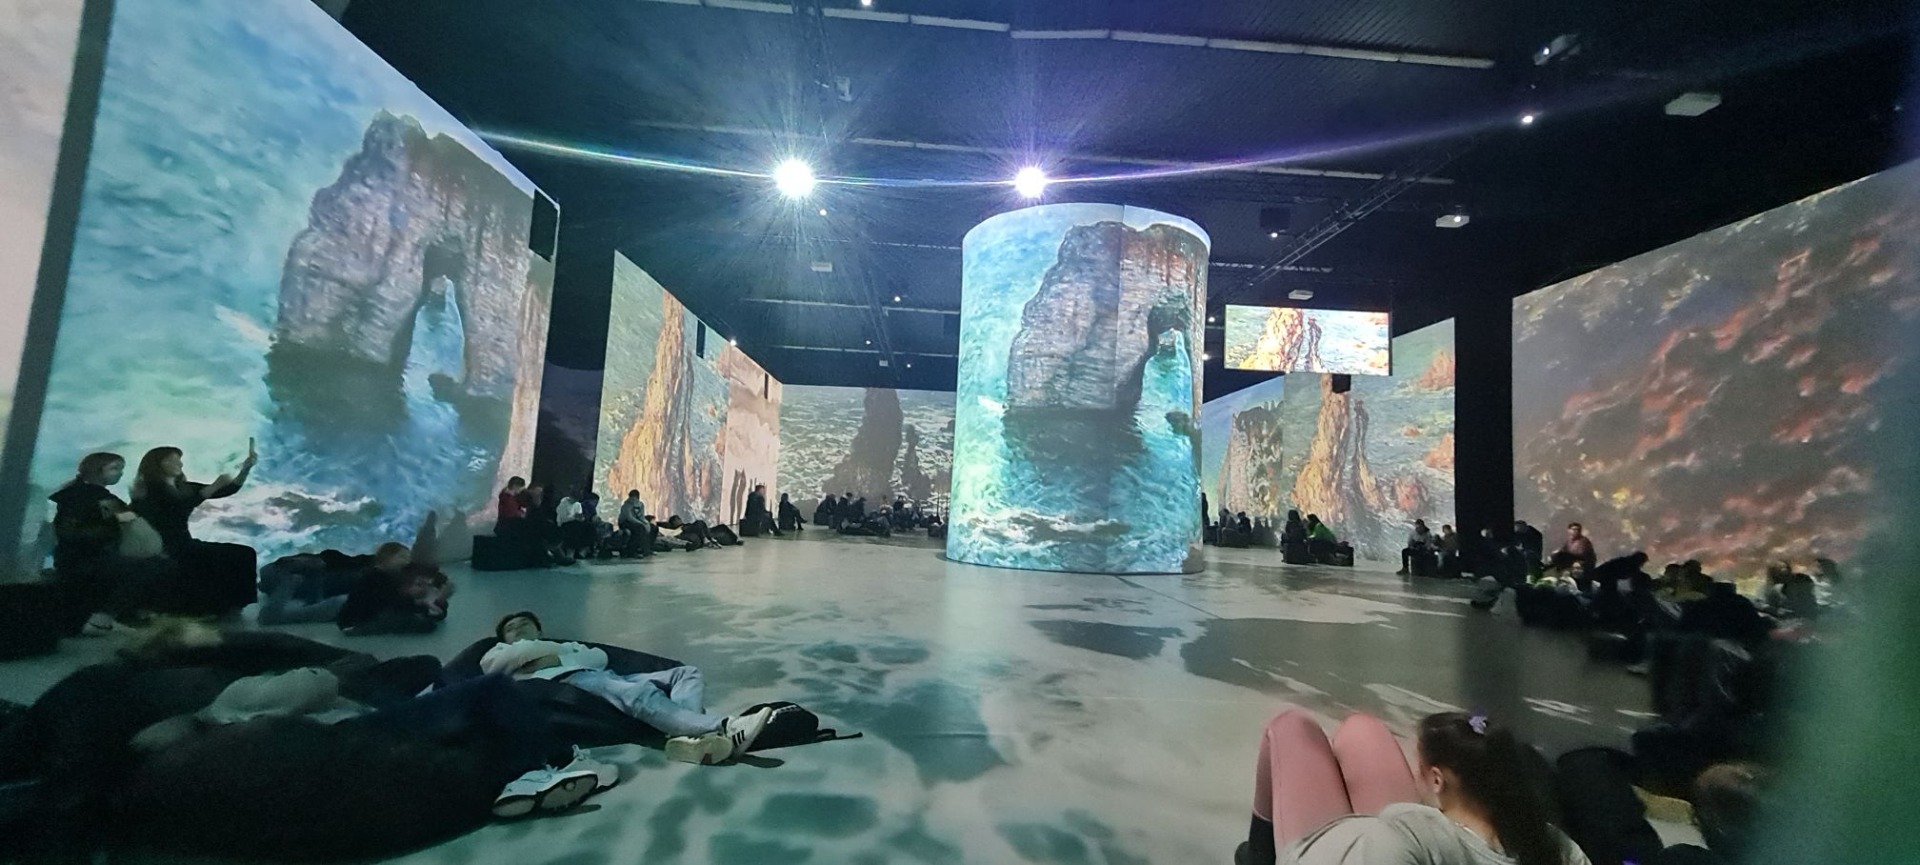 Obraz przedstawiający morze z formacjami skalnymi wyświetlony na wielkoformatowych powierzchniach. Widoczne sylwetki osób oglądających wystawę.